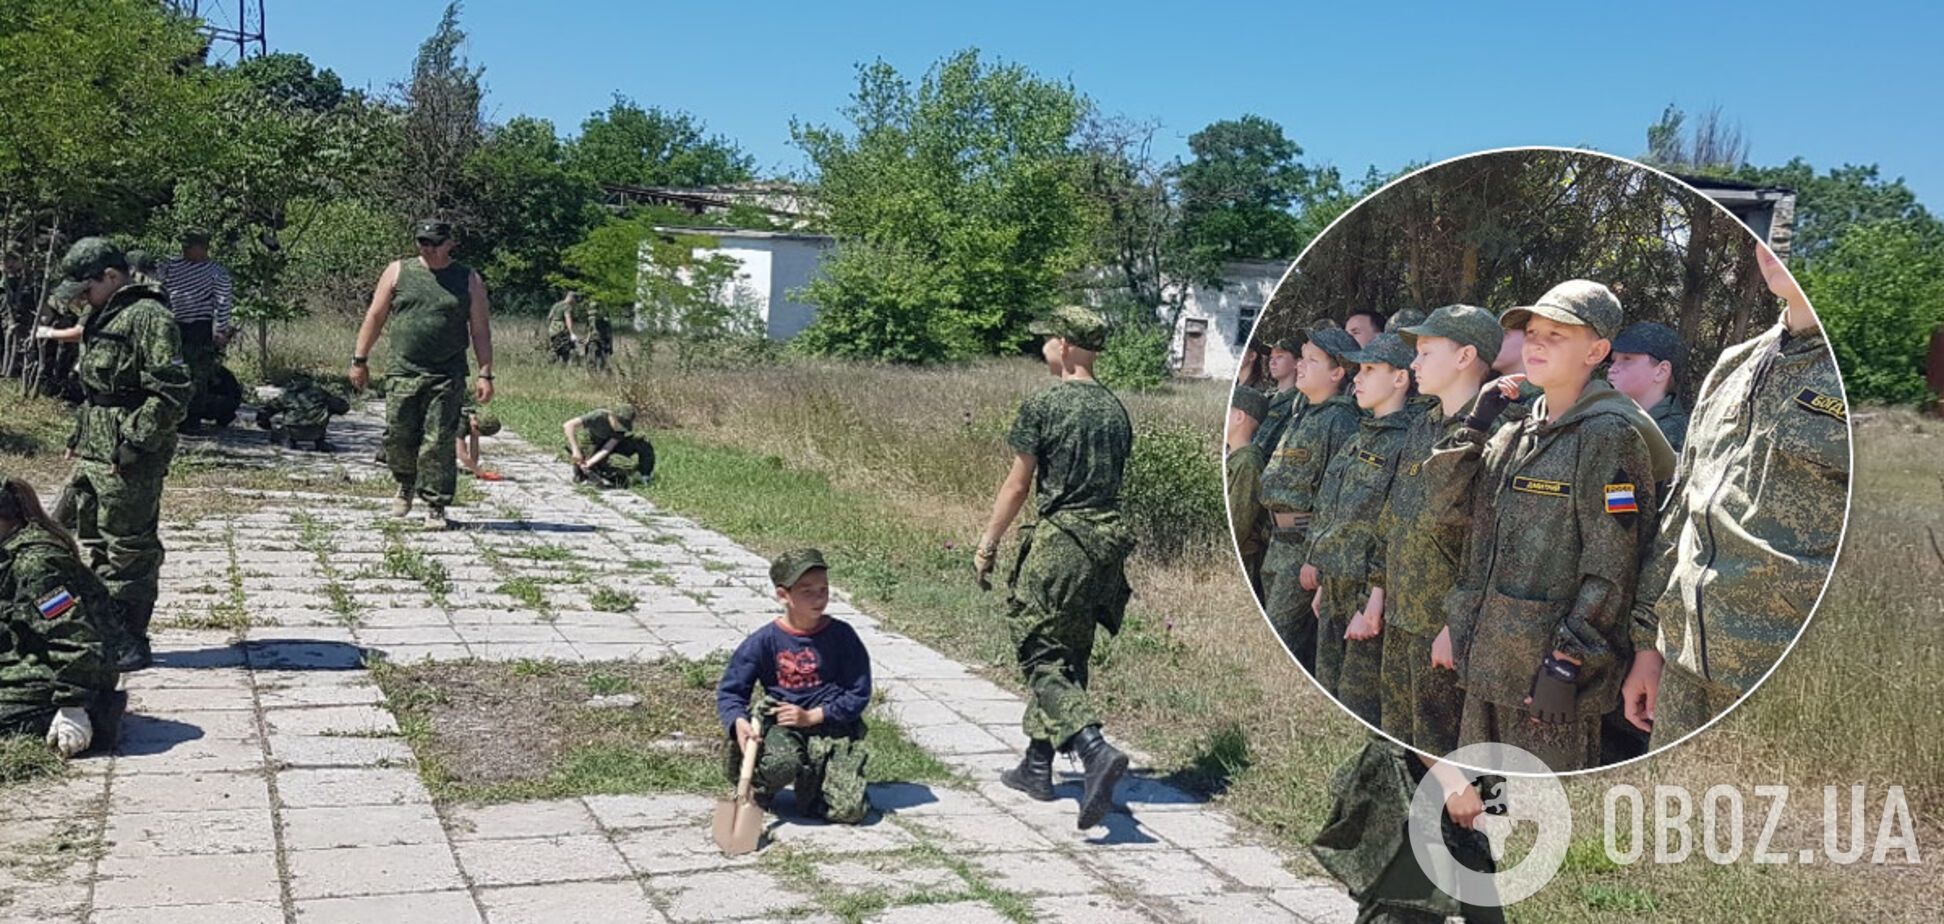 У Криму дітям влаштували 'трудодень' у військовій формі РФ: мережа обурилася. Фото